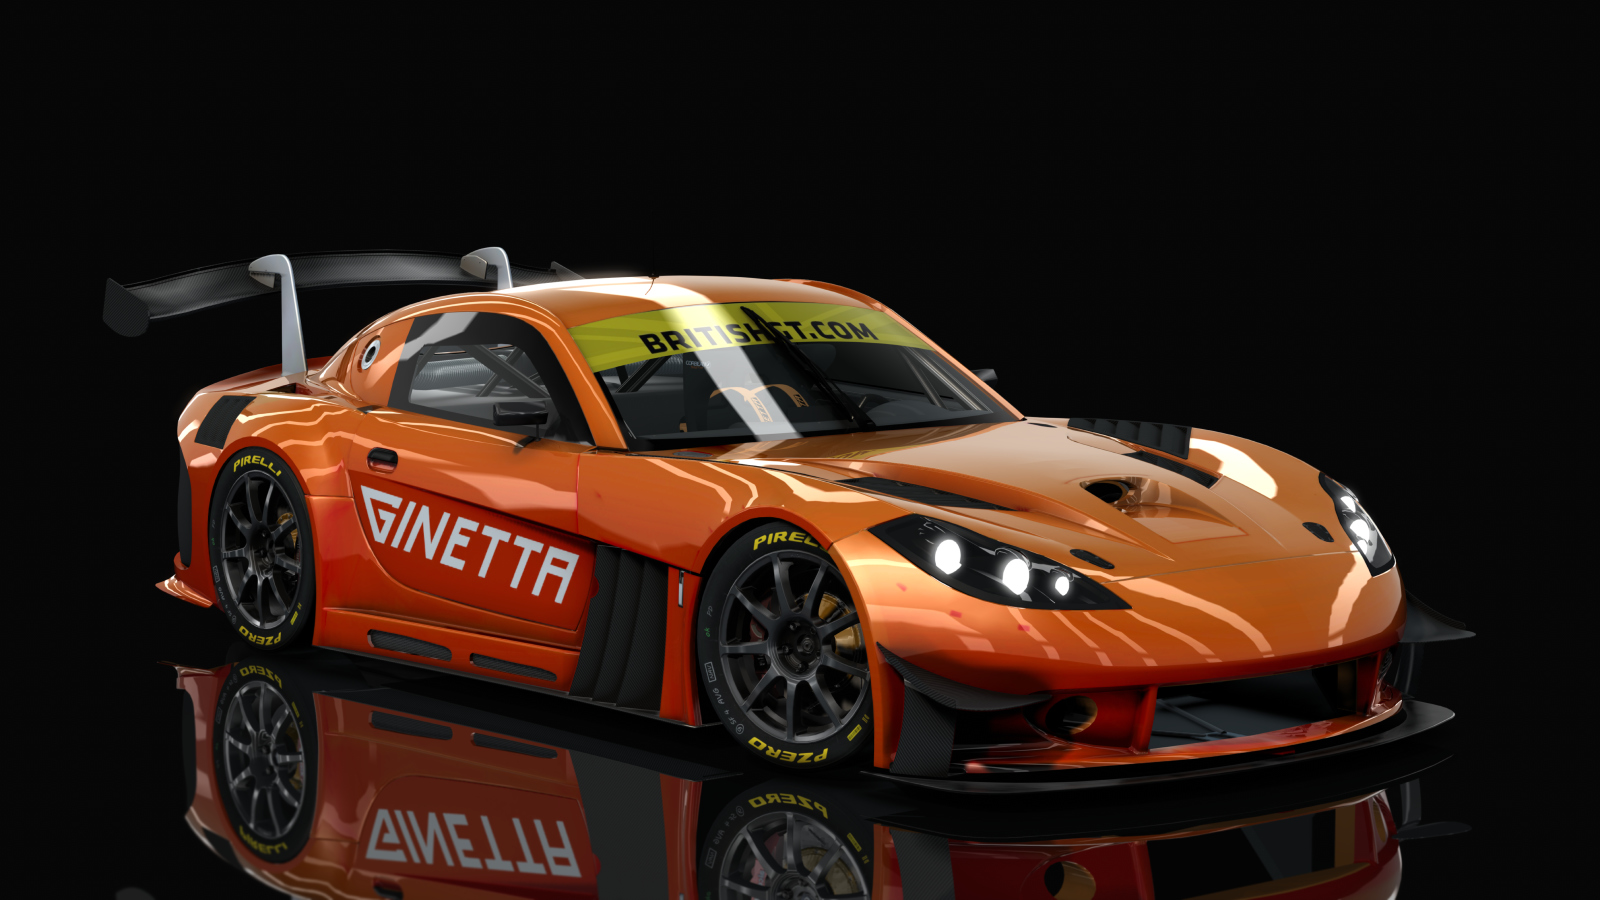 Ginetta G55 GT3 LHD, skin Orange